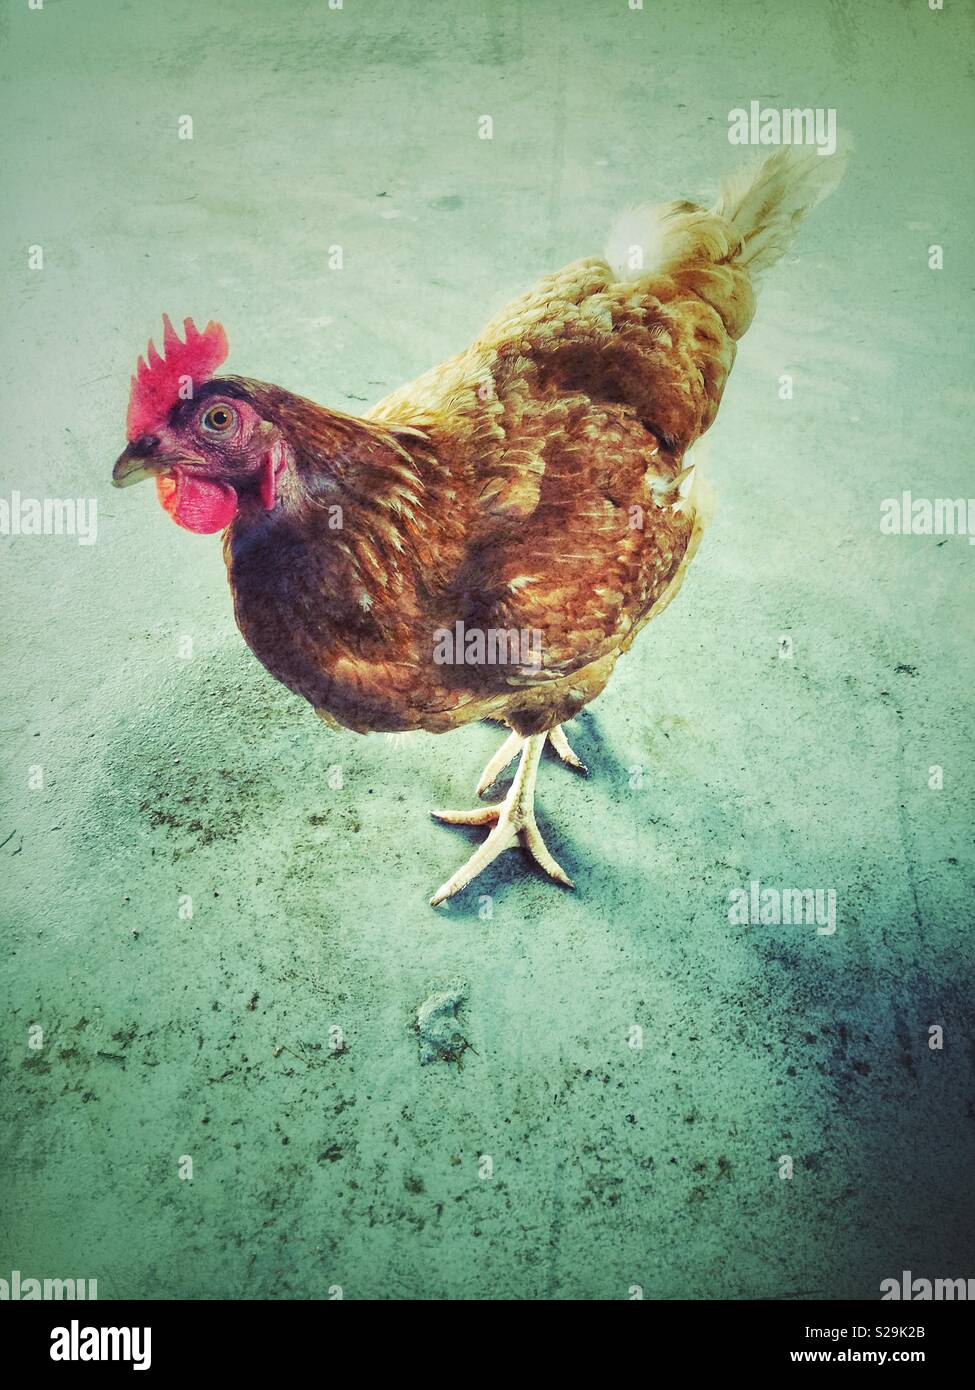 Creative ritratto di Rhode Island red backyard pollo in piedi sul pavimento in calcestruzzo Foto Stock